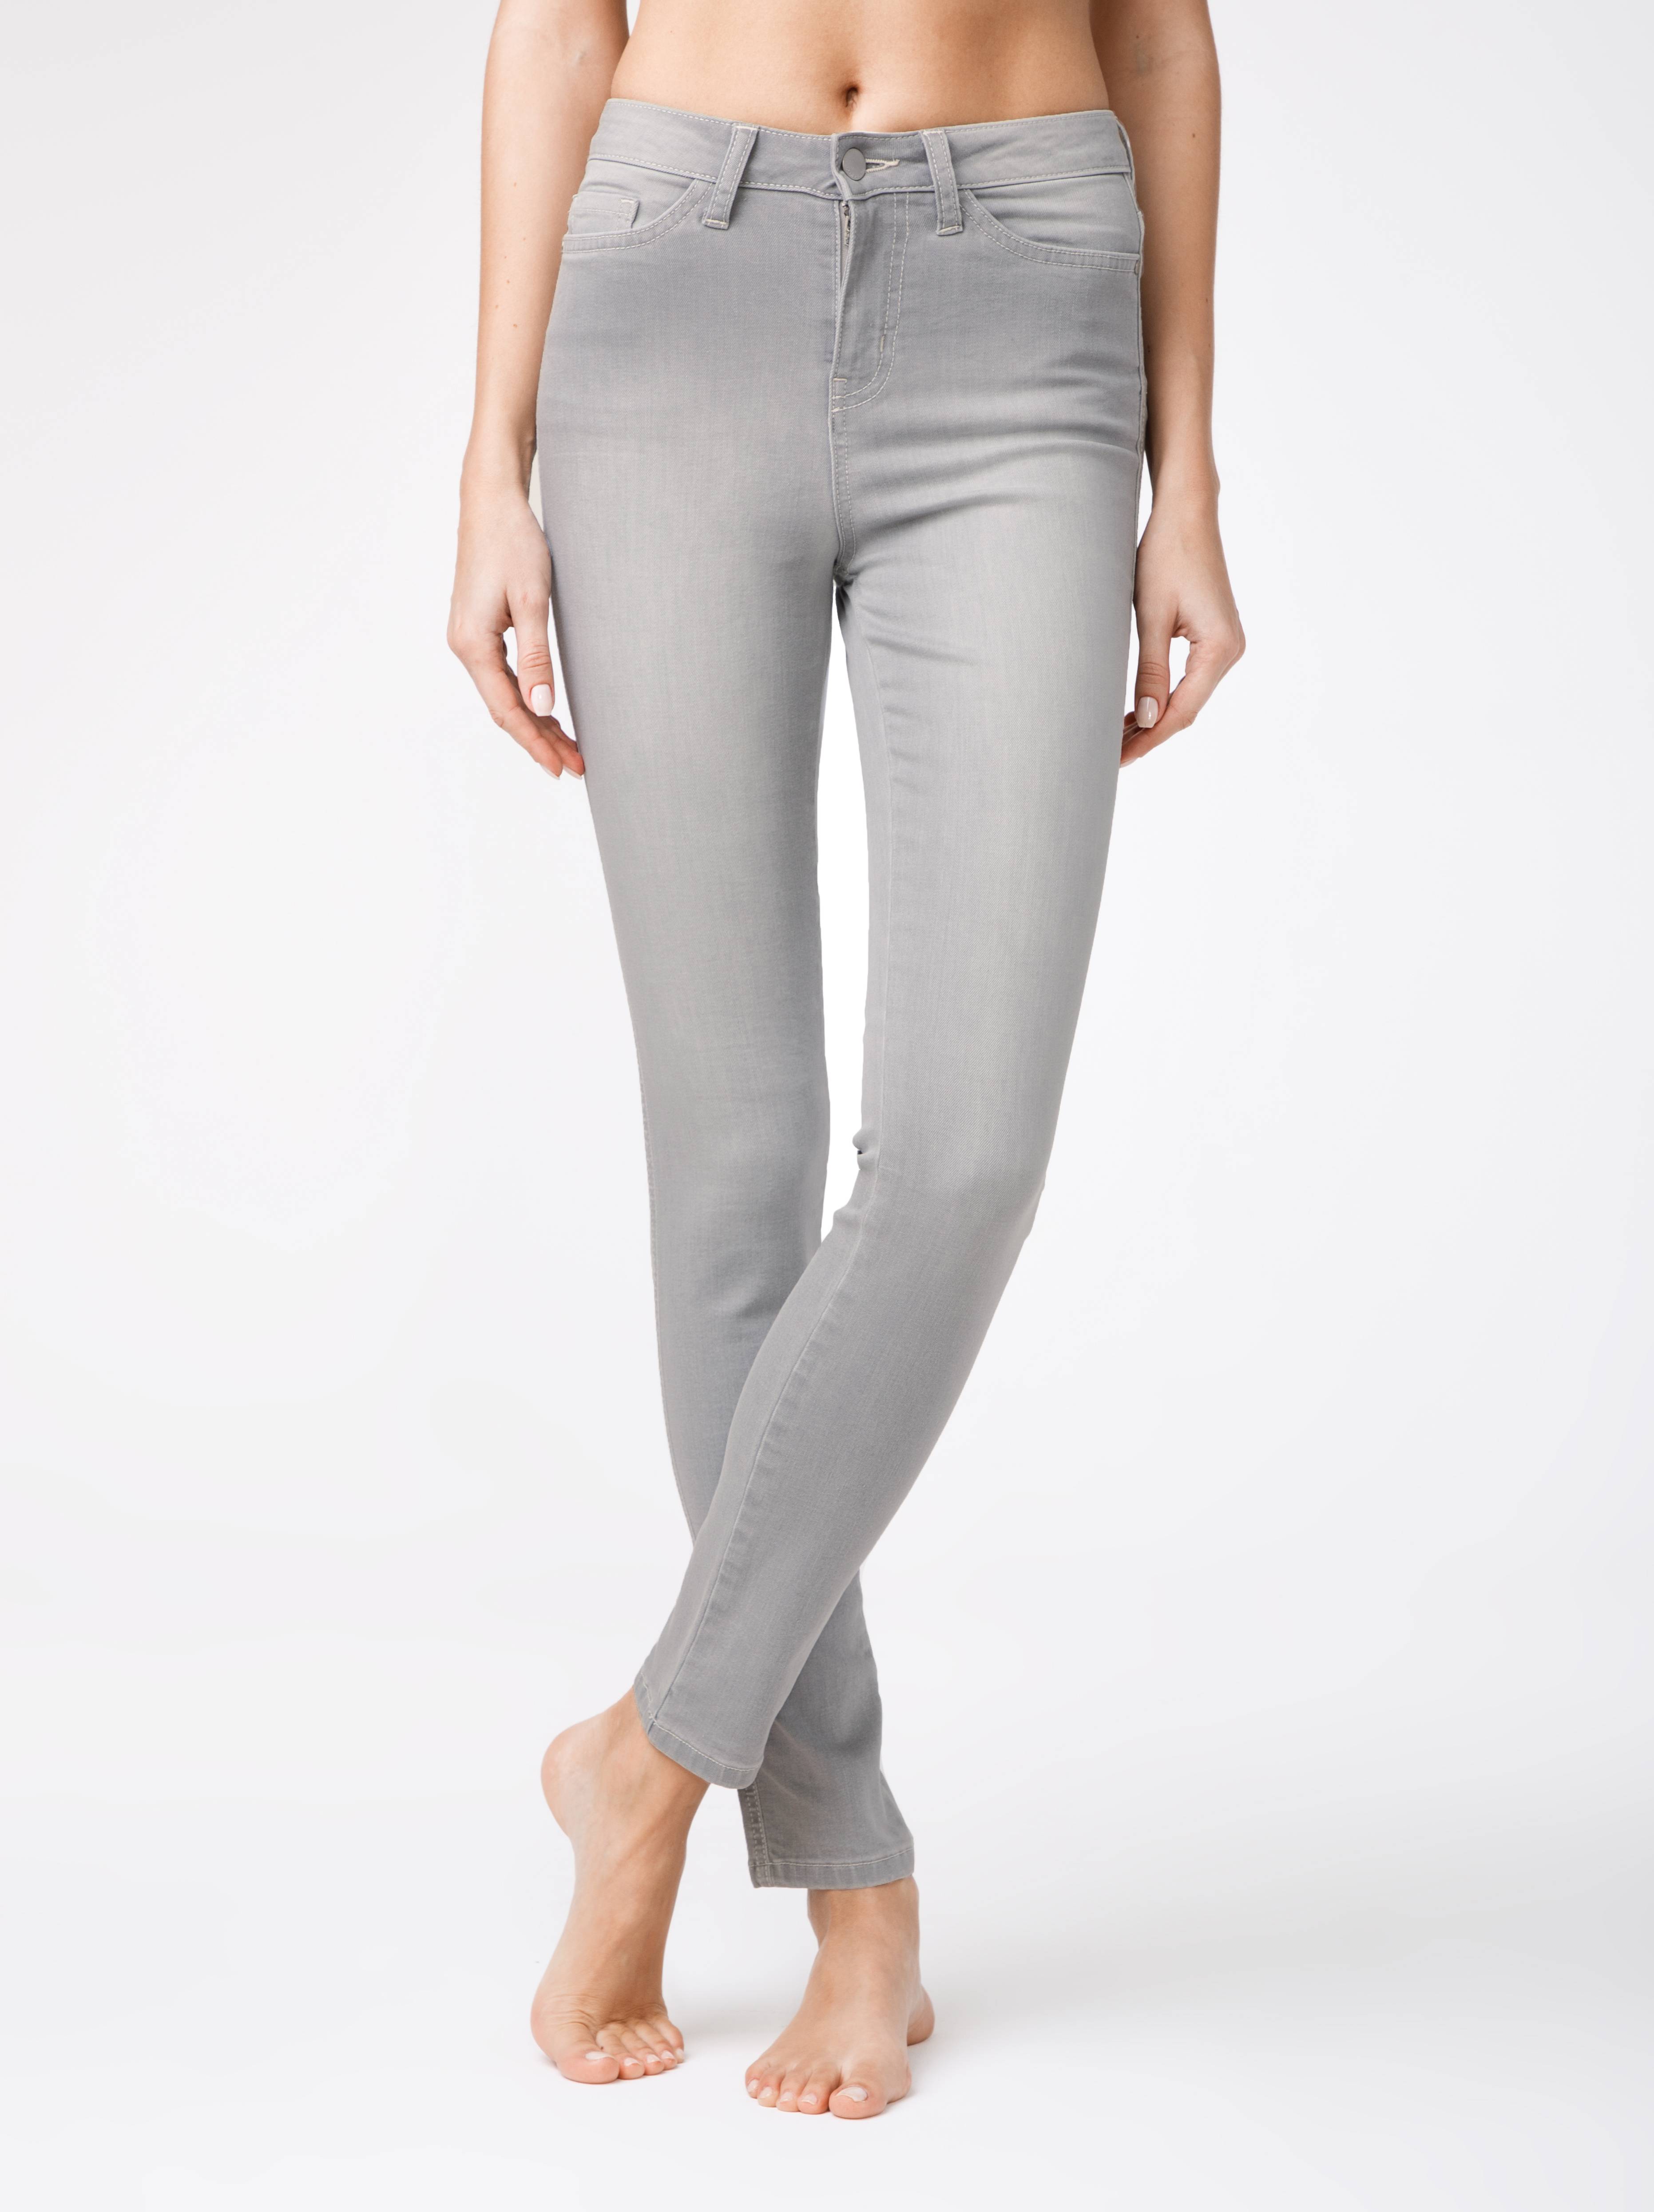 Ультраэластичные джинсы с высокой посадкой CON-117 Conte ⭐️, цвет light grey, размер 164-102 - фото 1